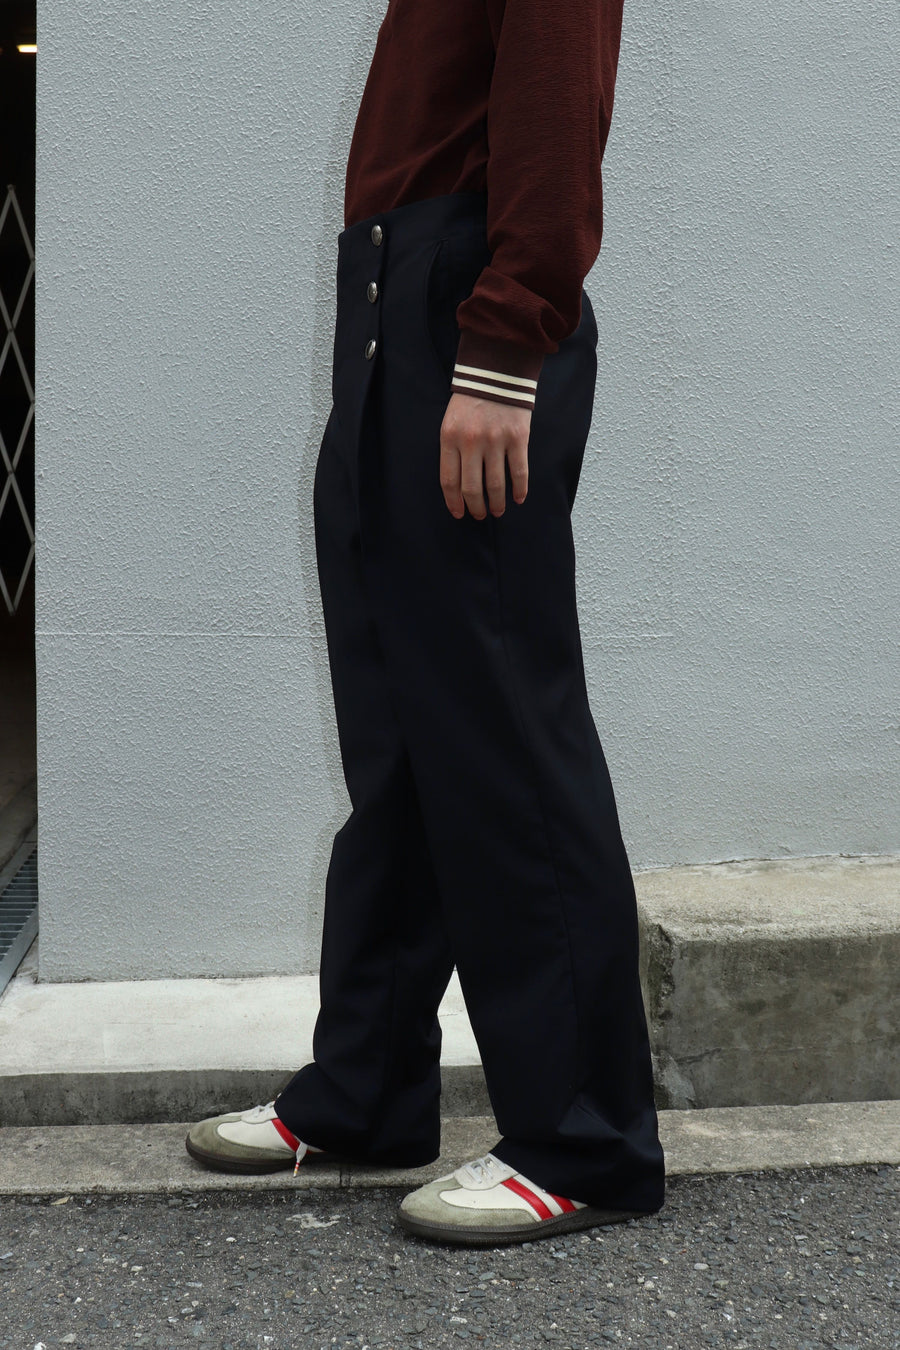 LITTLEBIG  Sailor Trousers(Navy)